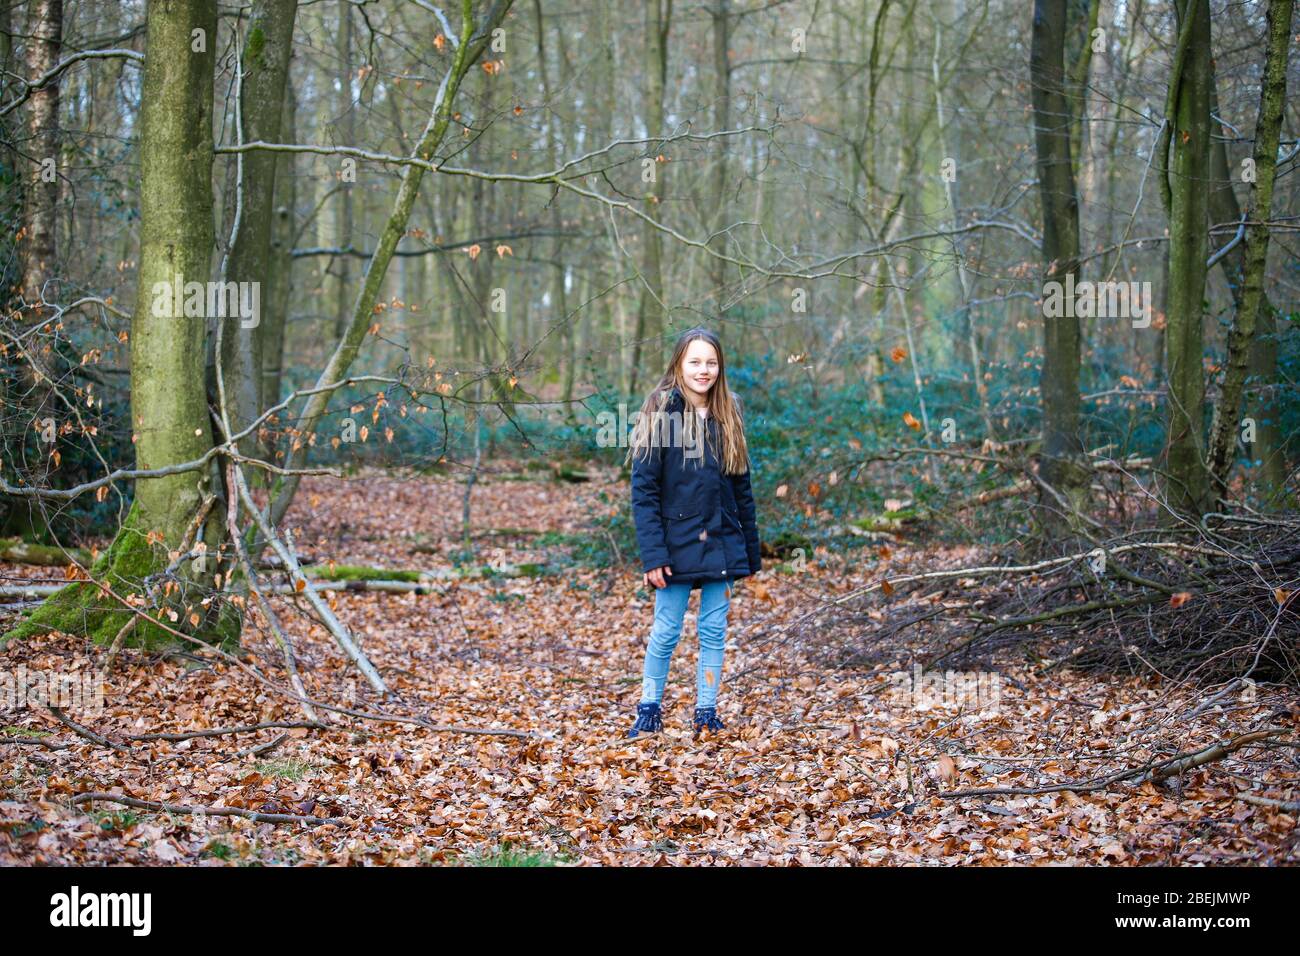 una niña se encuentra en el bosque y las hojas caen sobre ella Foto de stock